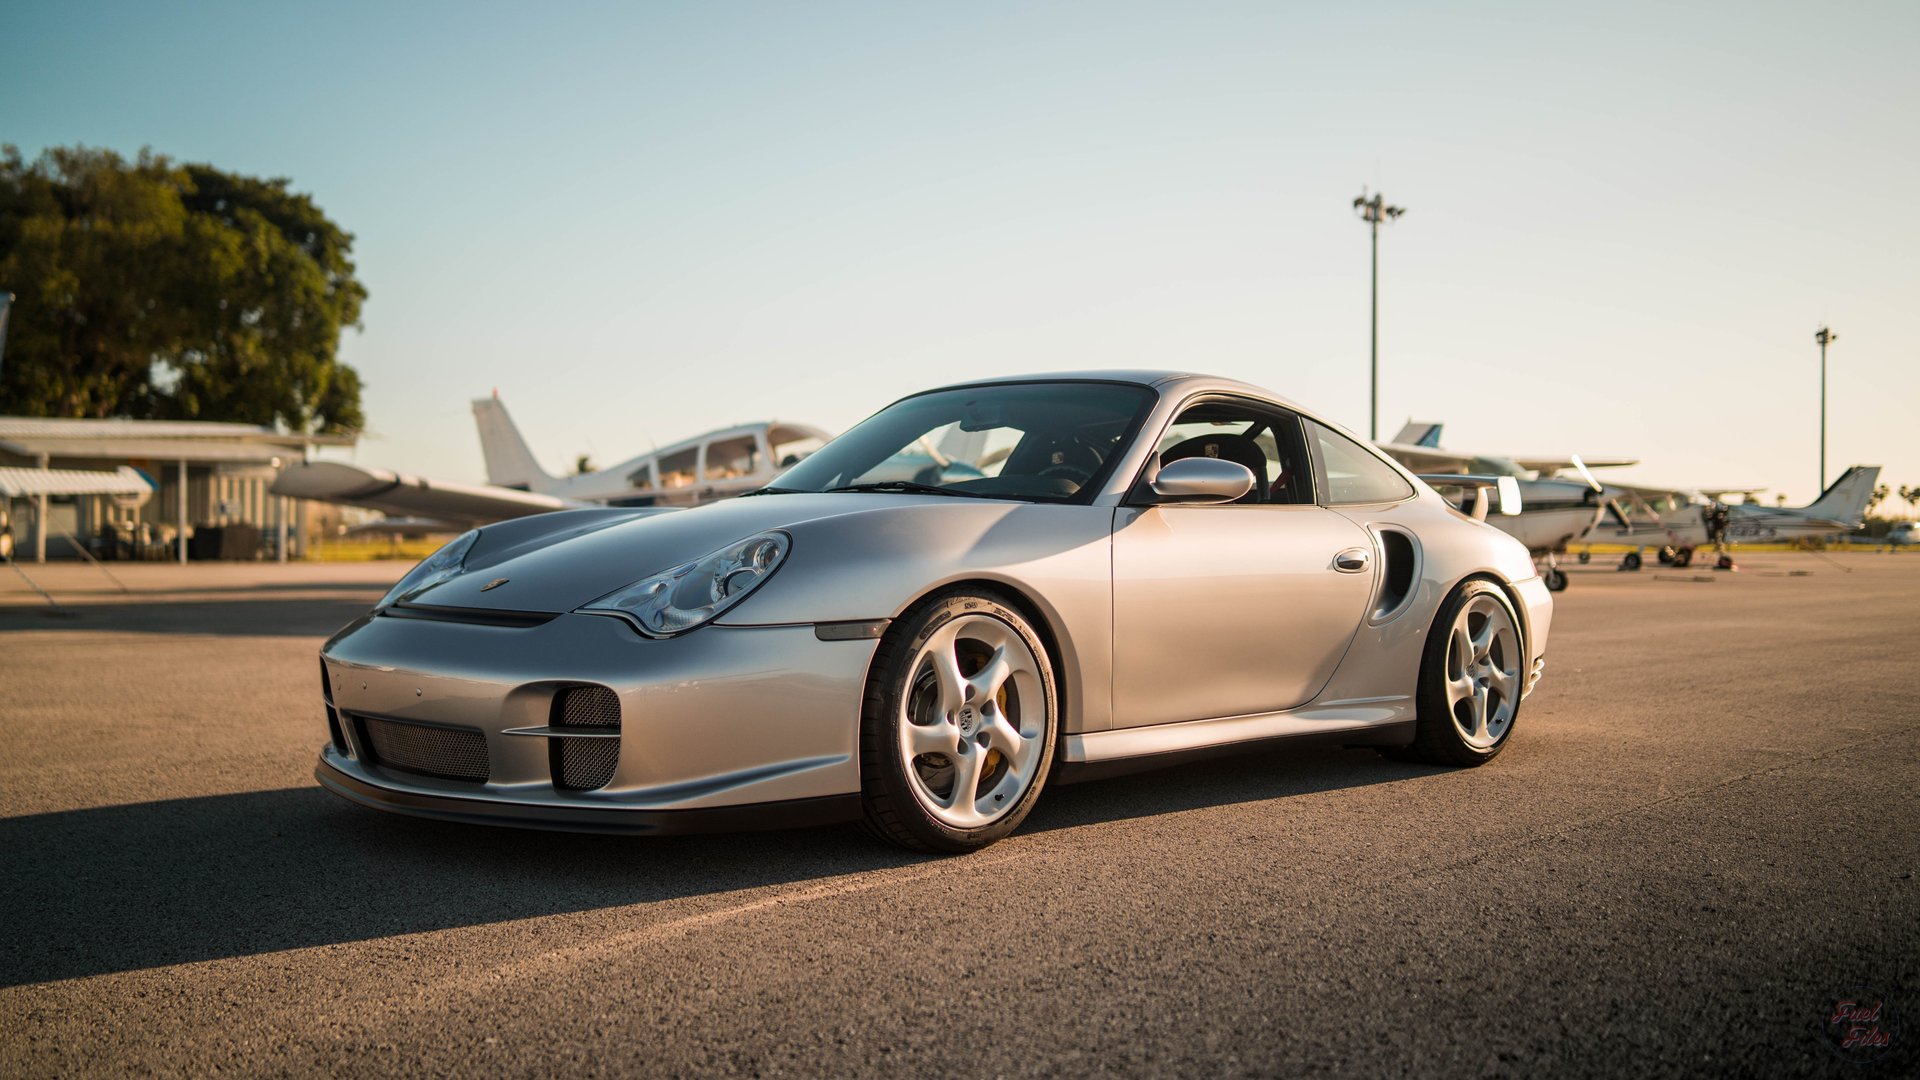 Download mobile wallpaper Porsche, Car, Porsche 911, Vehicles, Silver Car for free.